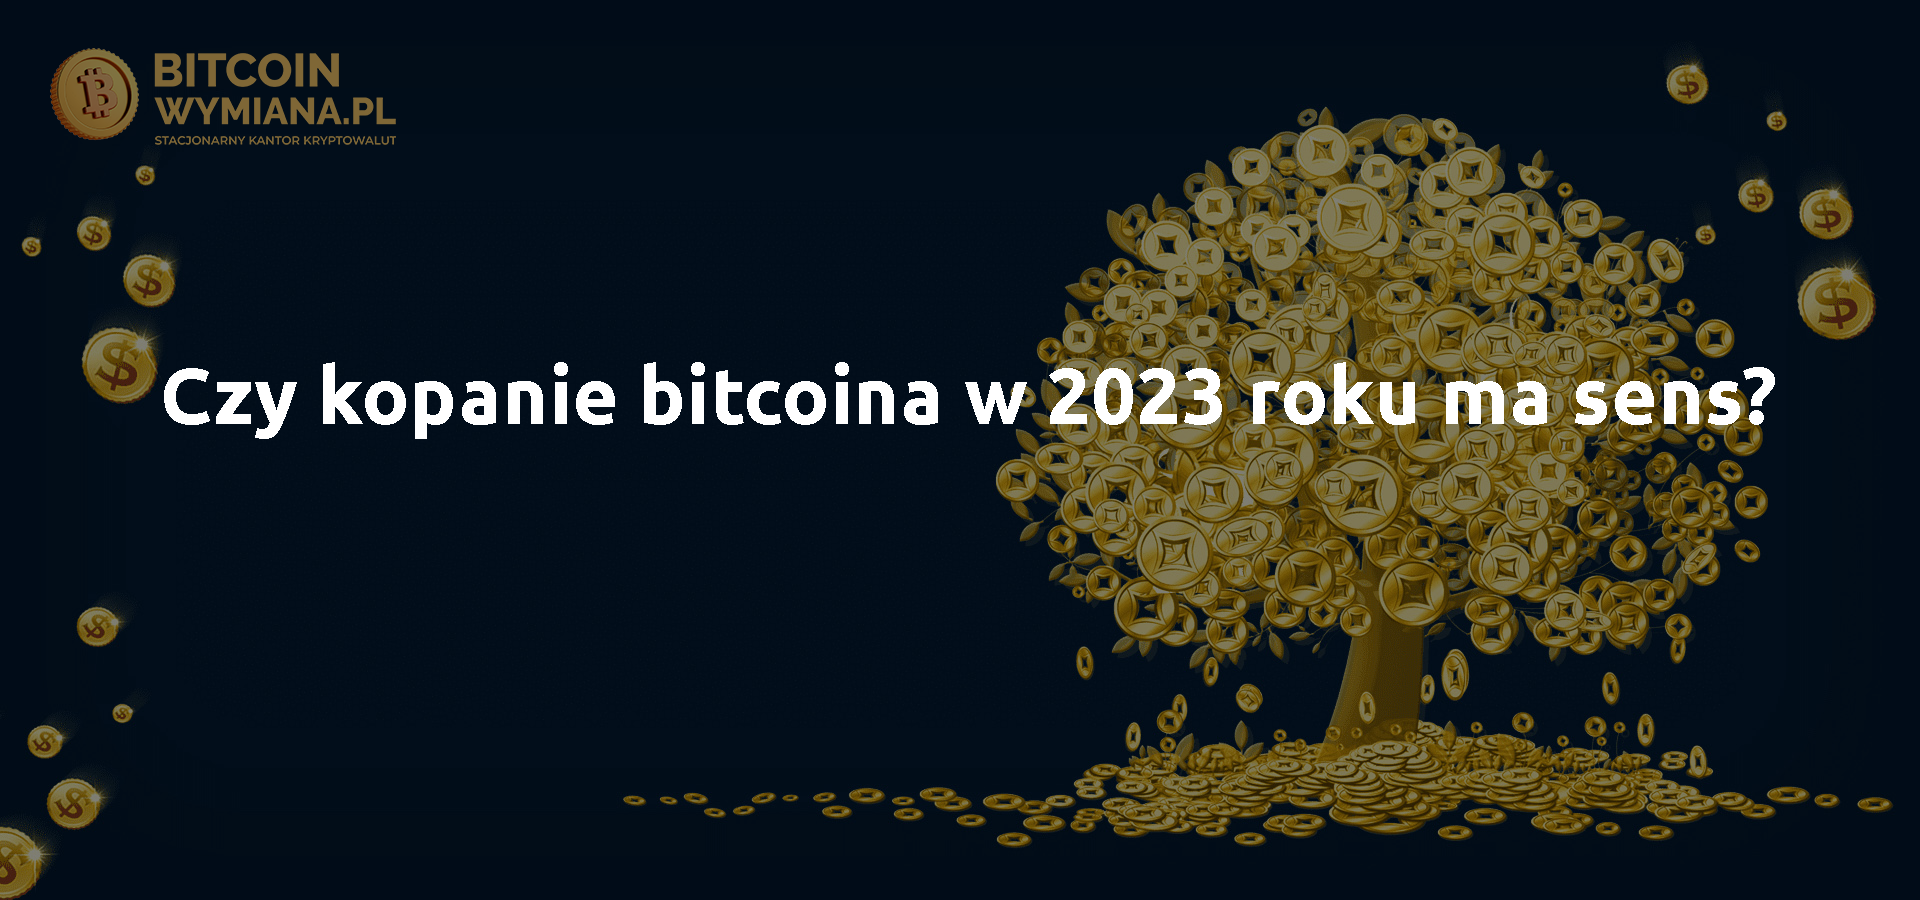 Czy kopanie bitcoina w 2023 roku ma sens?